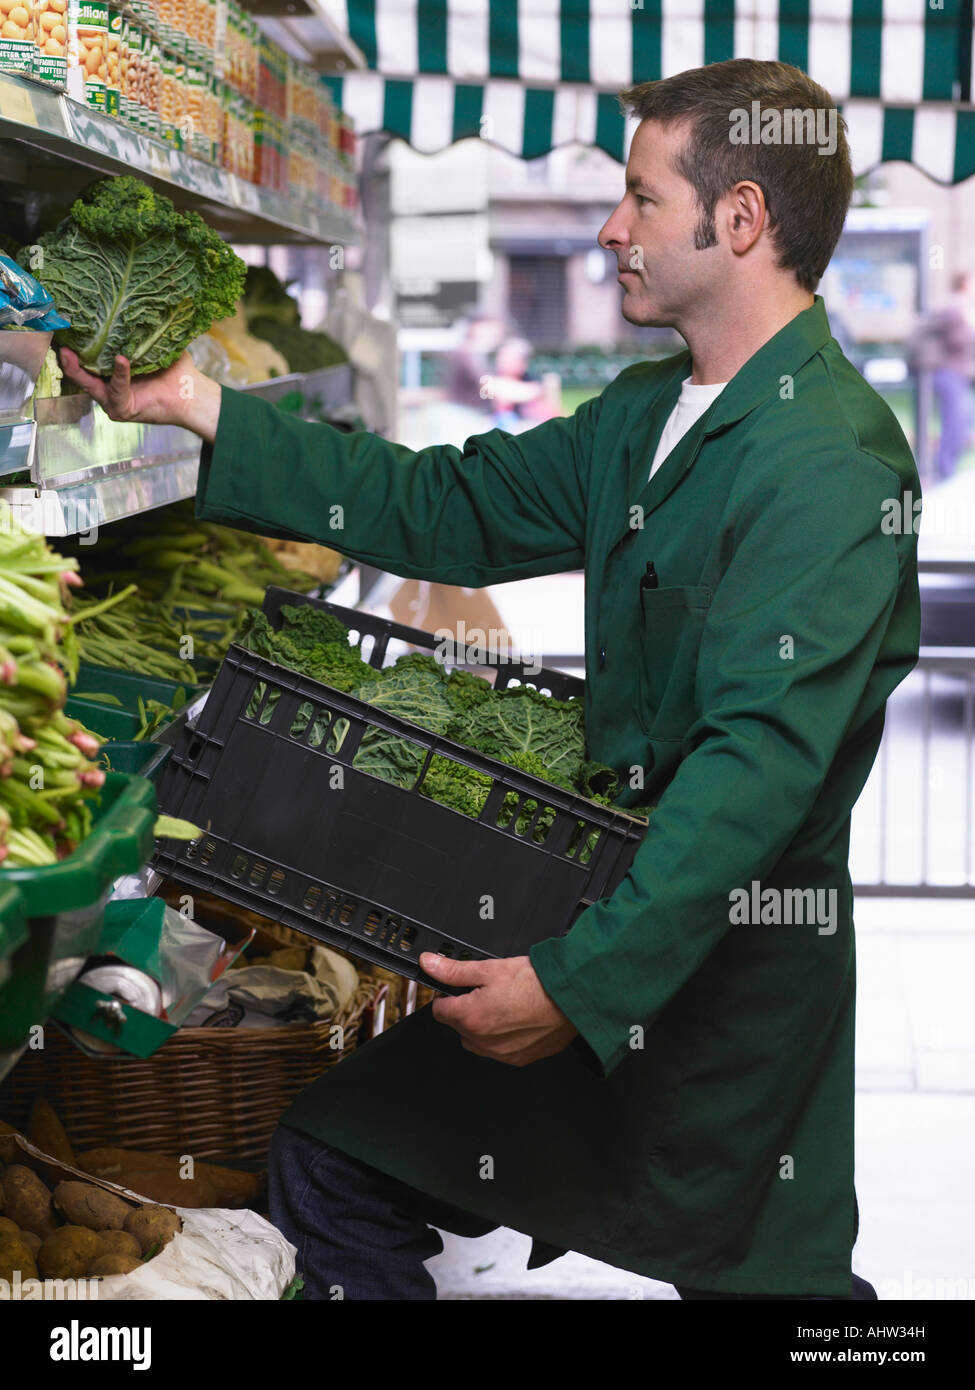 Épicerie étagères de remplissage avec des légumes Banque D'Images